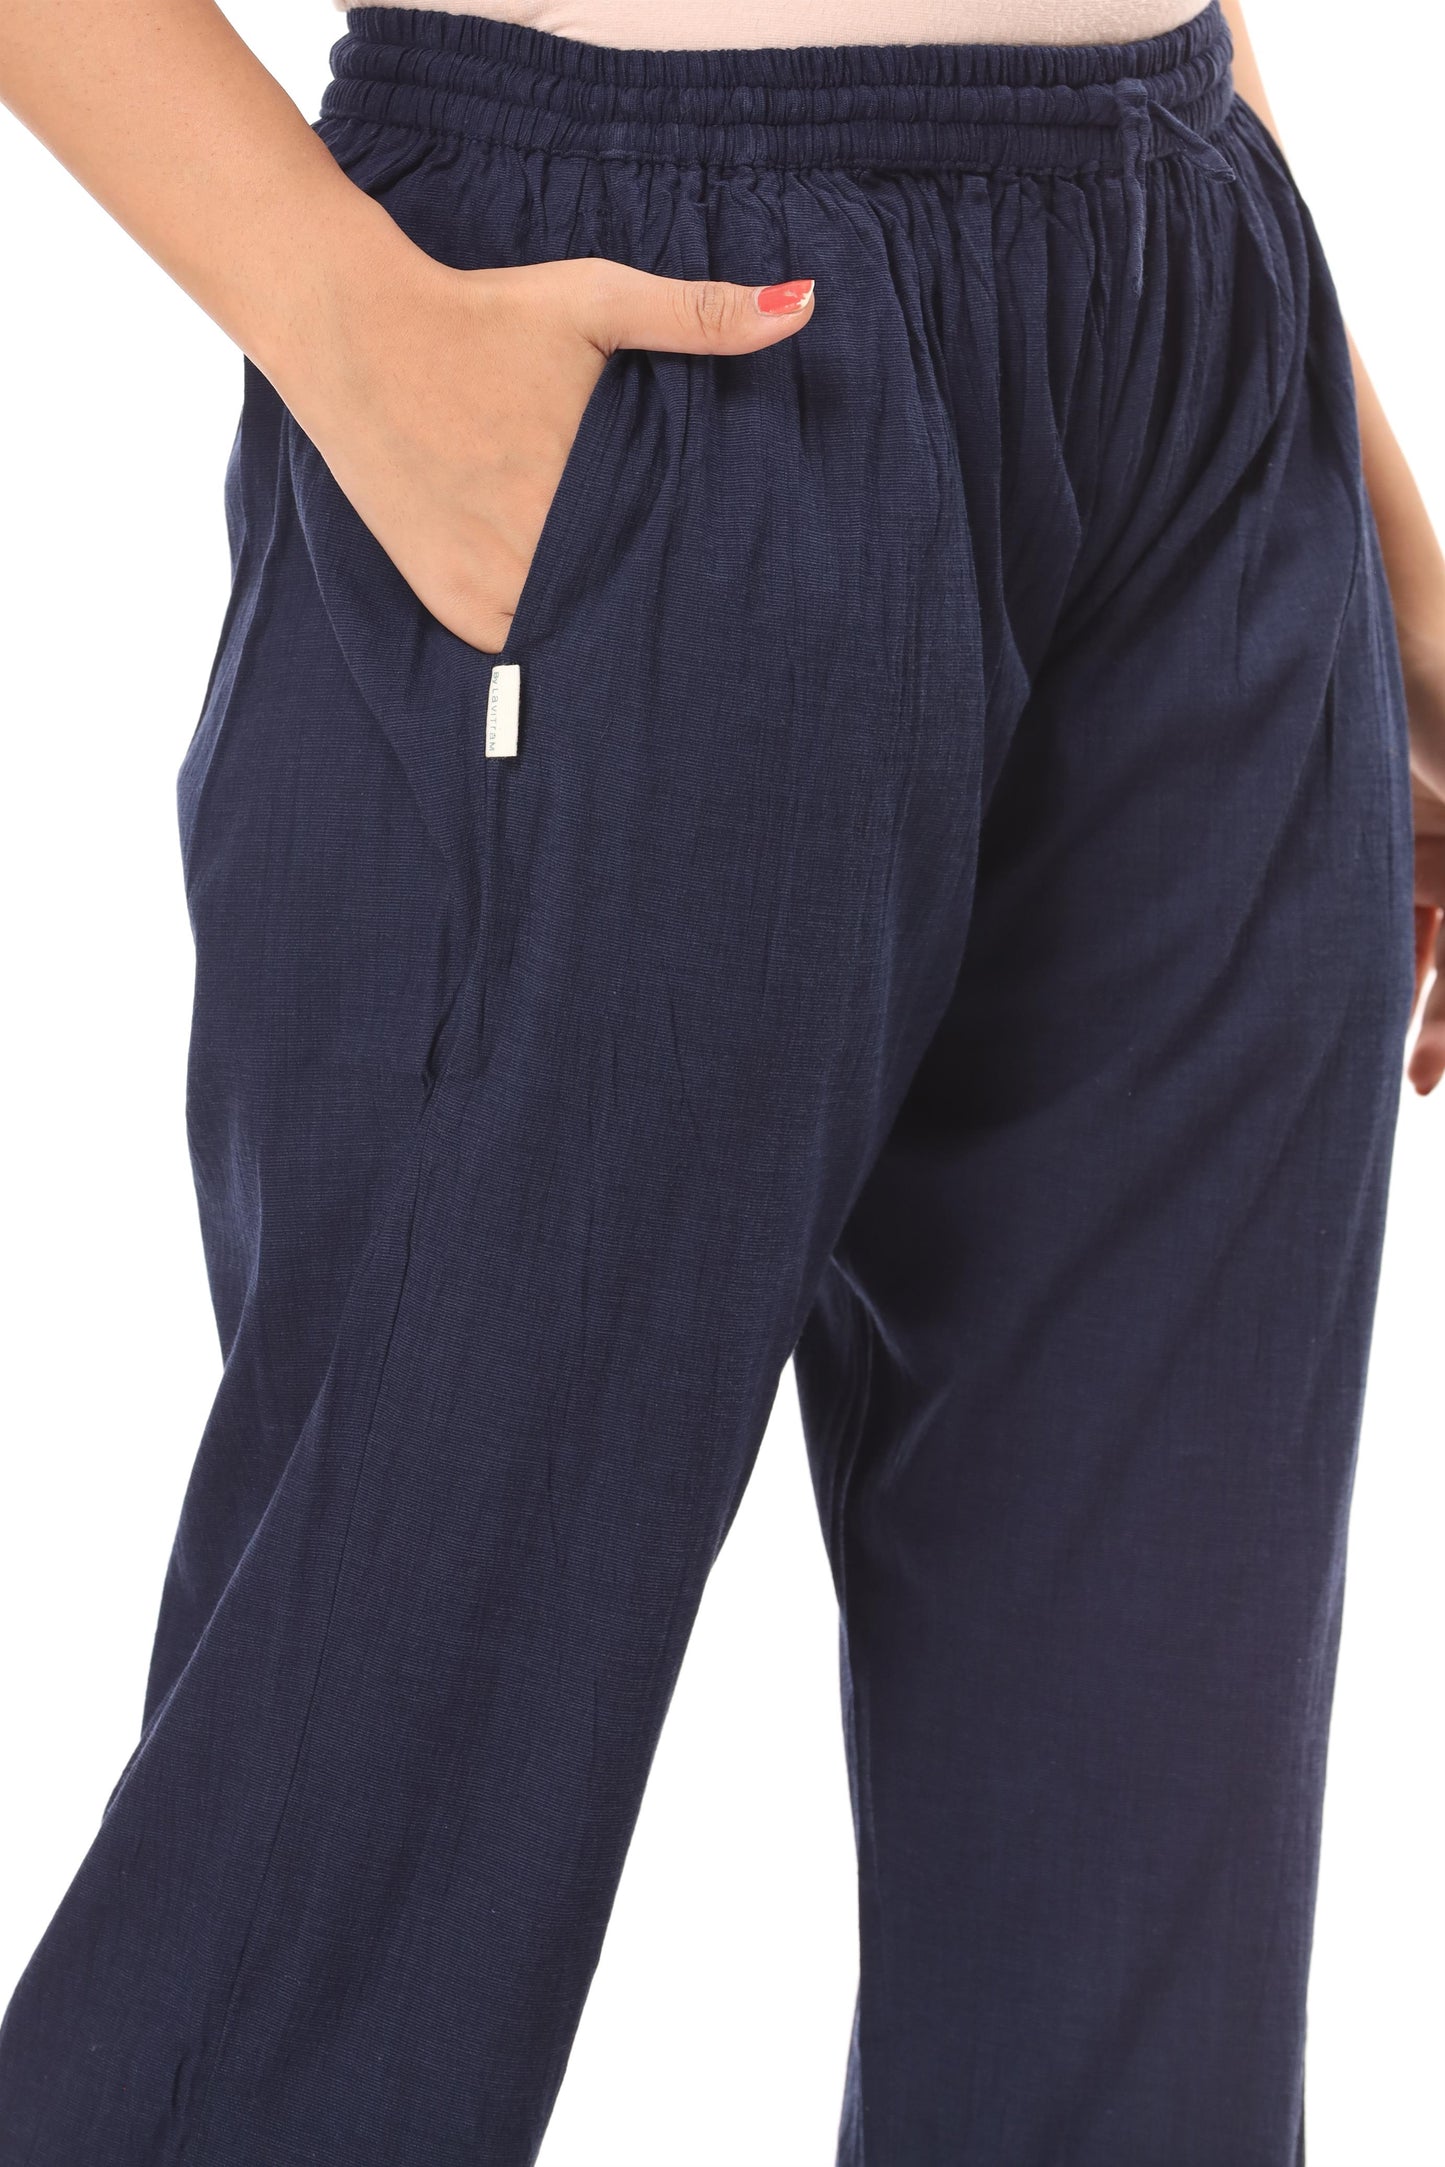 2-way stretch Navy Blue Cotton Lycra Pants